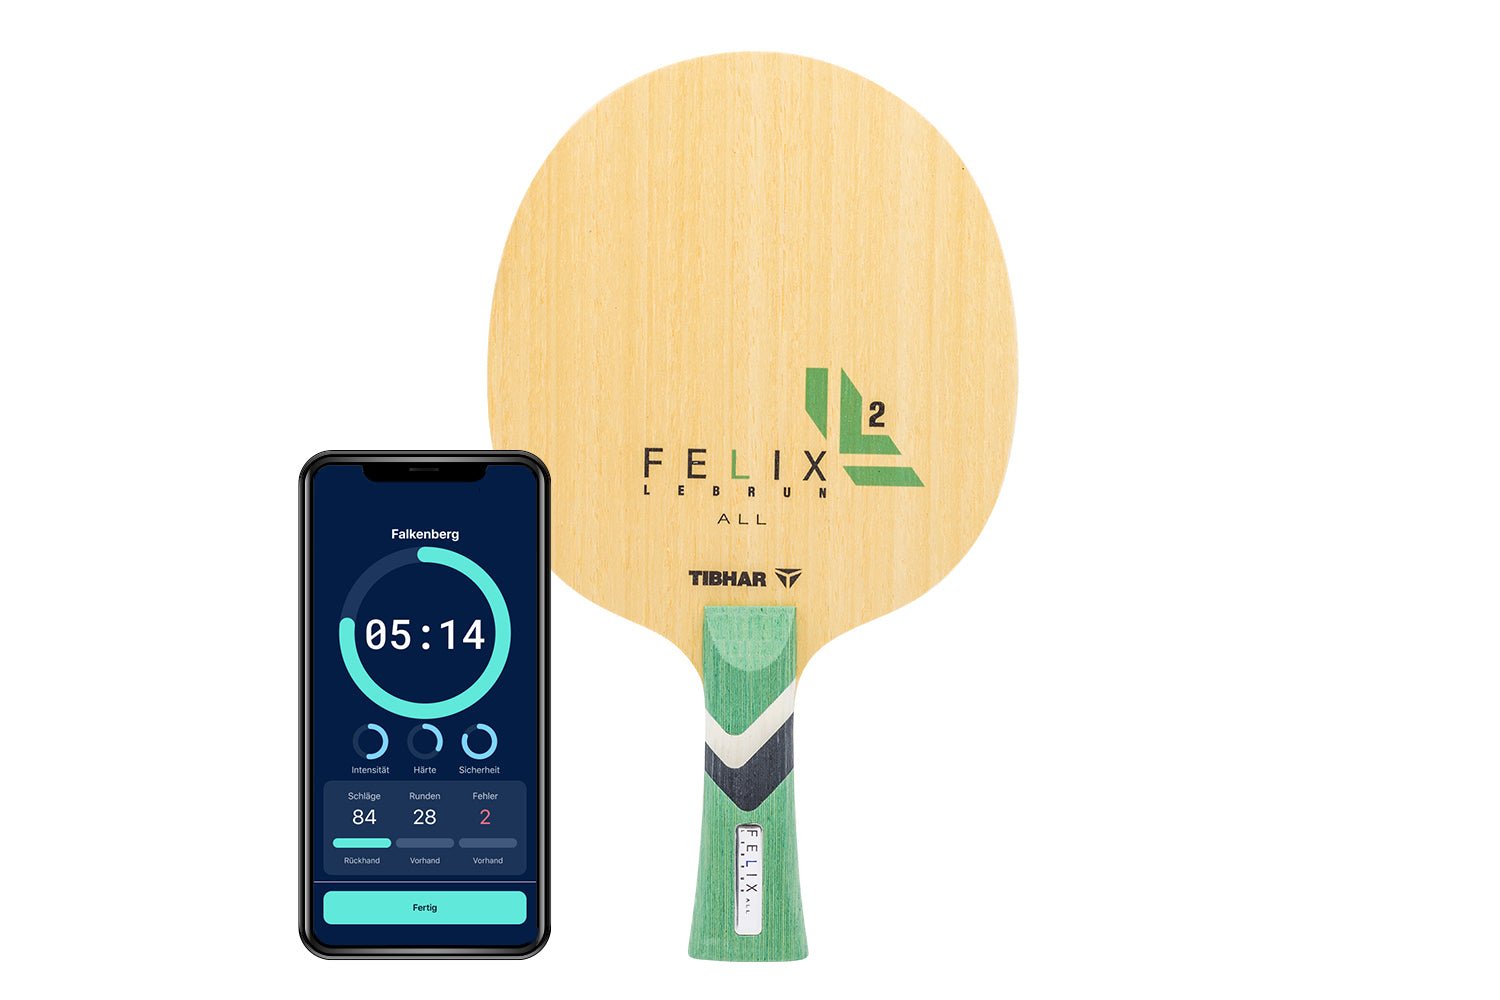 Tibhar Félix Lebrun All Tischtennisschläger mit konkaven Griff und Smartphone zeigt Daten des Schlägers vor weißem Hintergrund